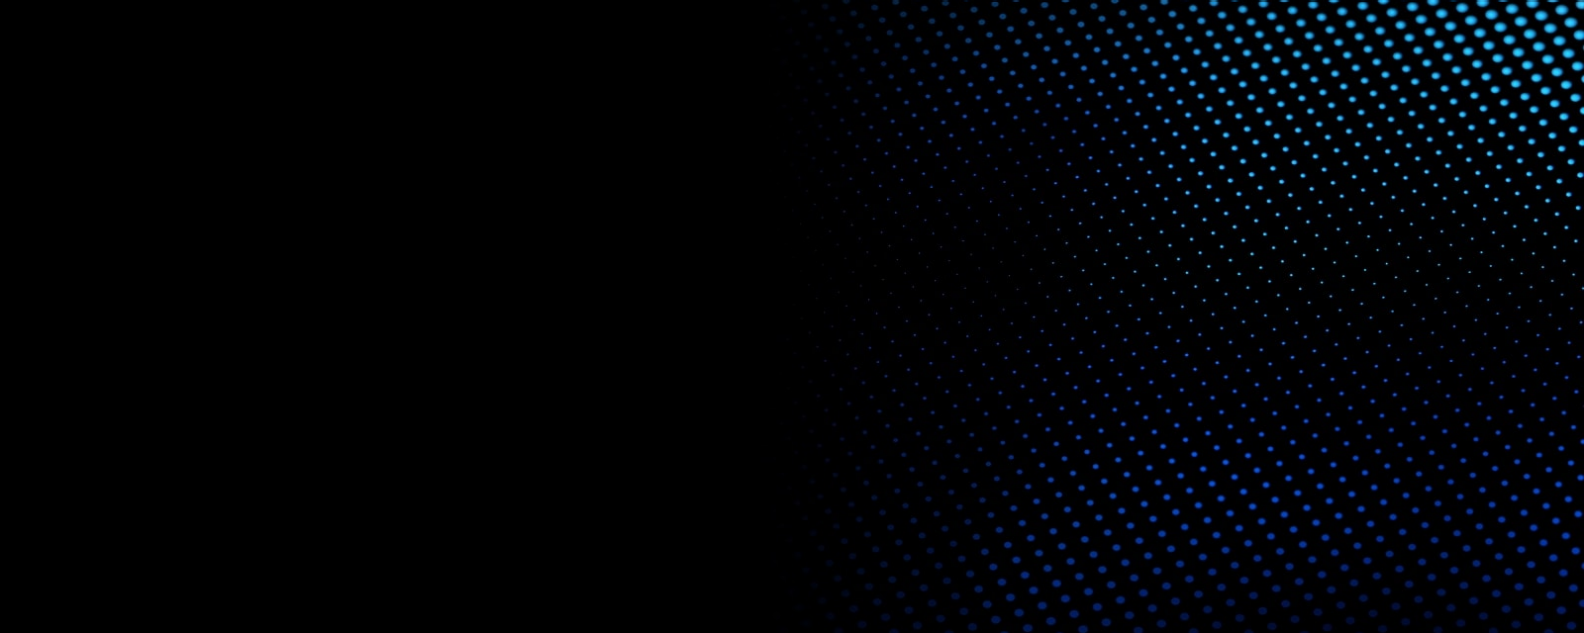 Schwarzer Hintergrund mit kleinen blauen Kreisen